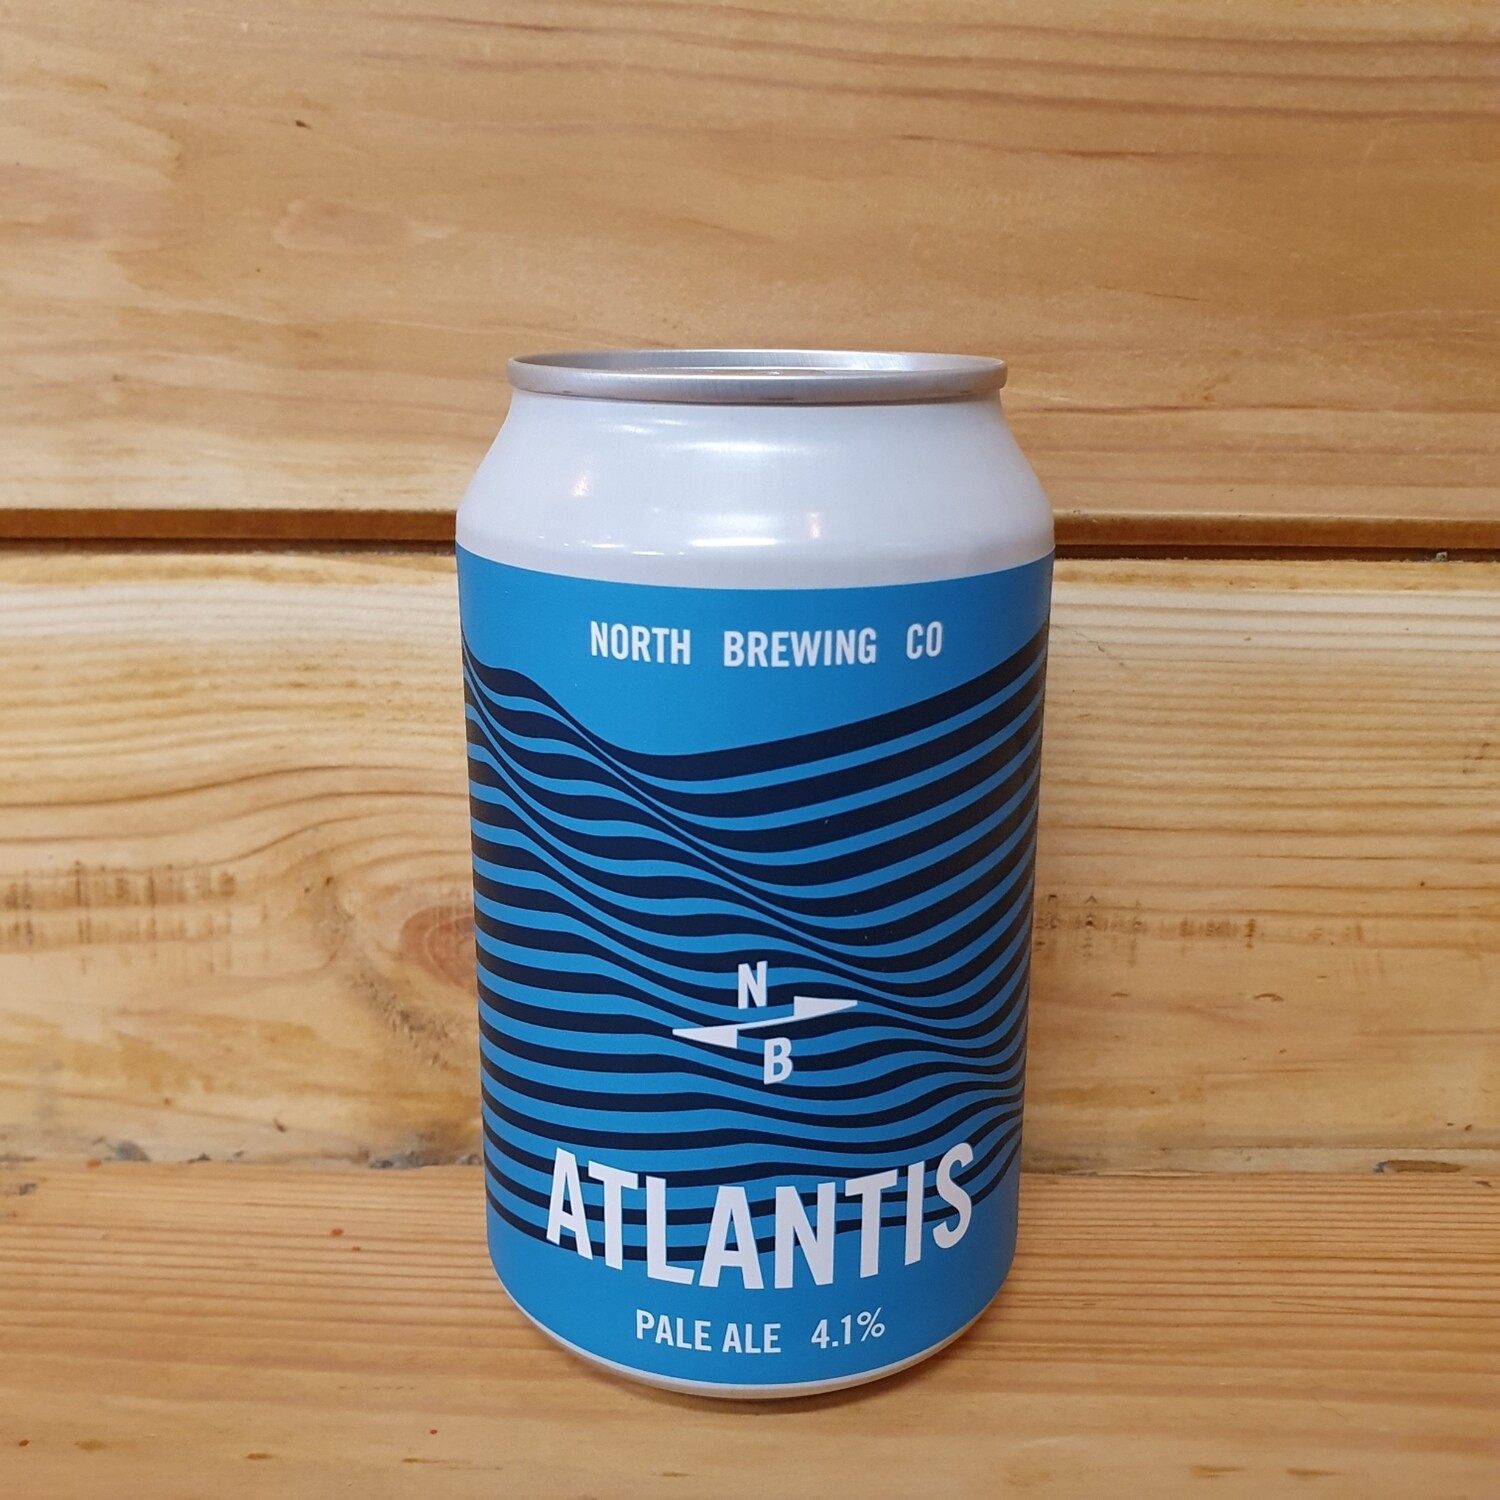 North Brewing - Atlantis - Pale Ale 4.1% (330ml)